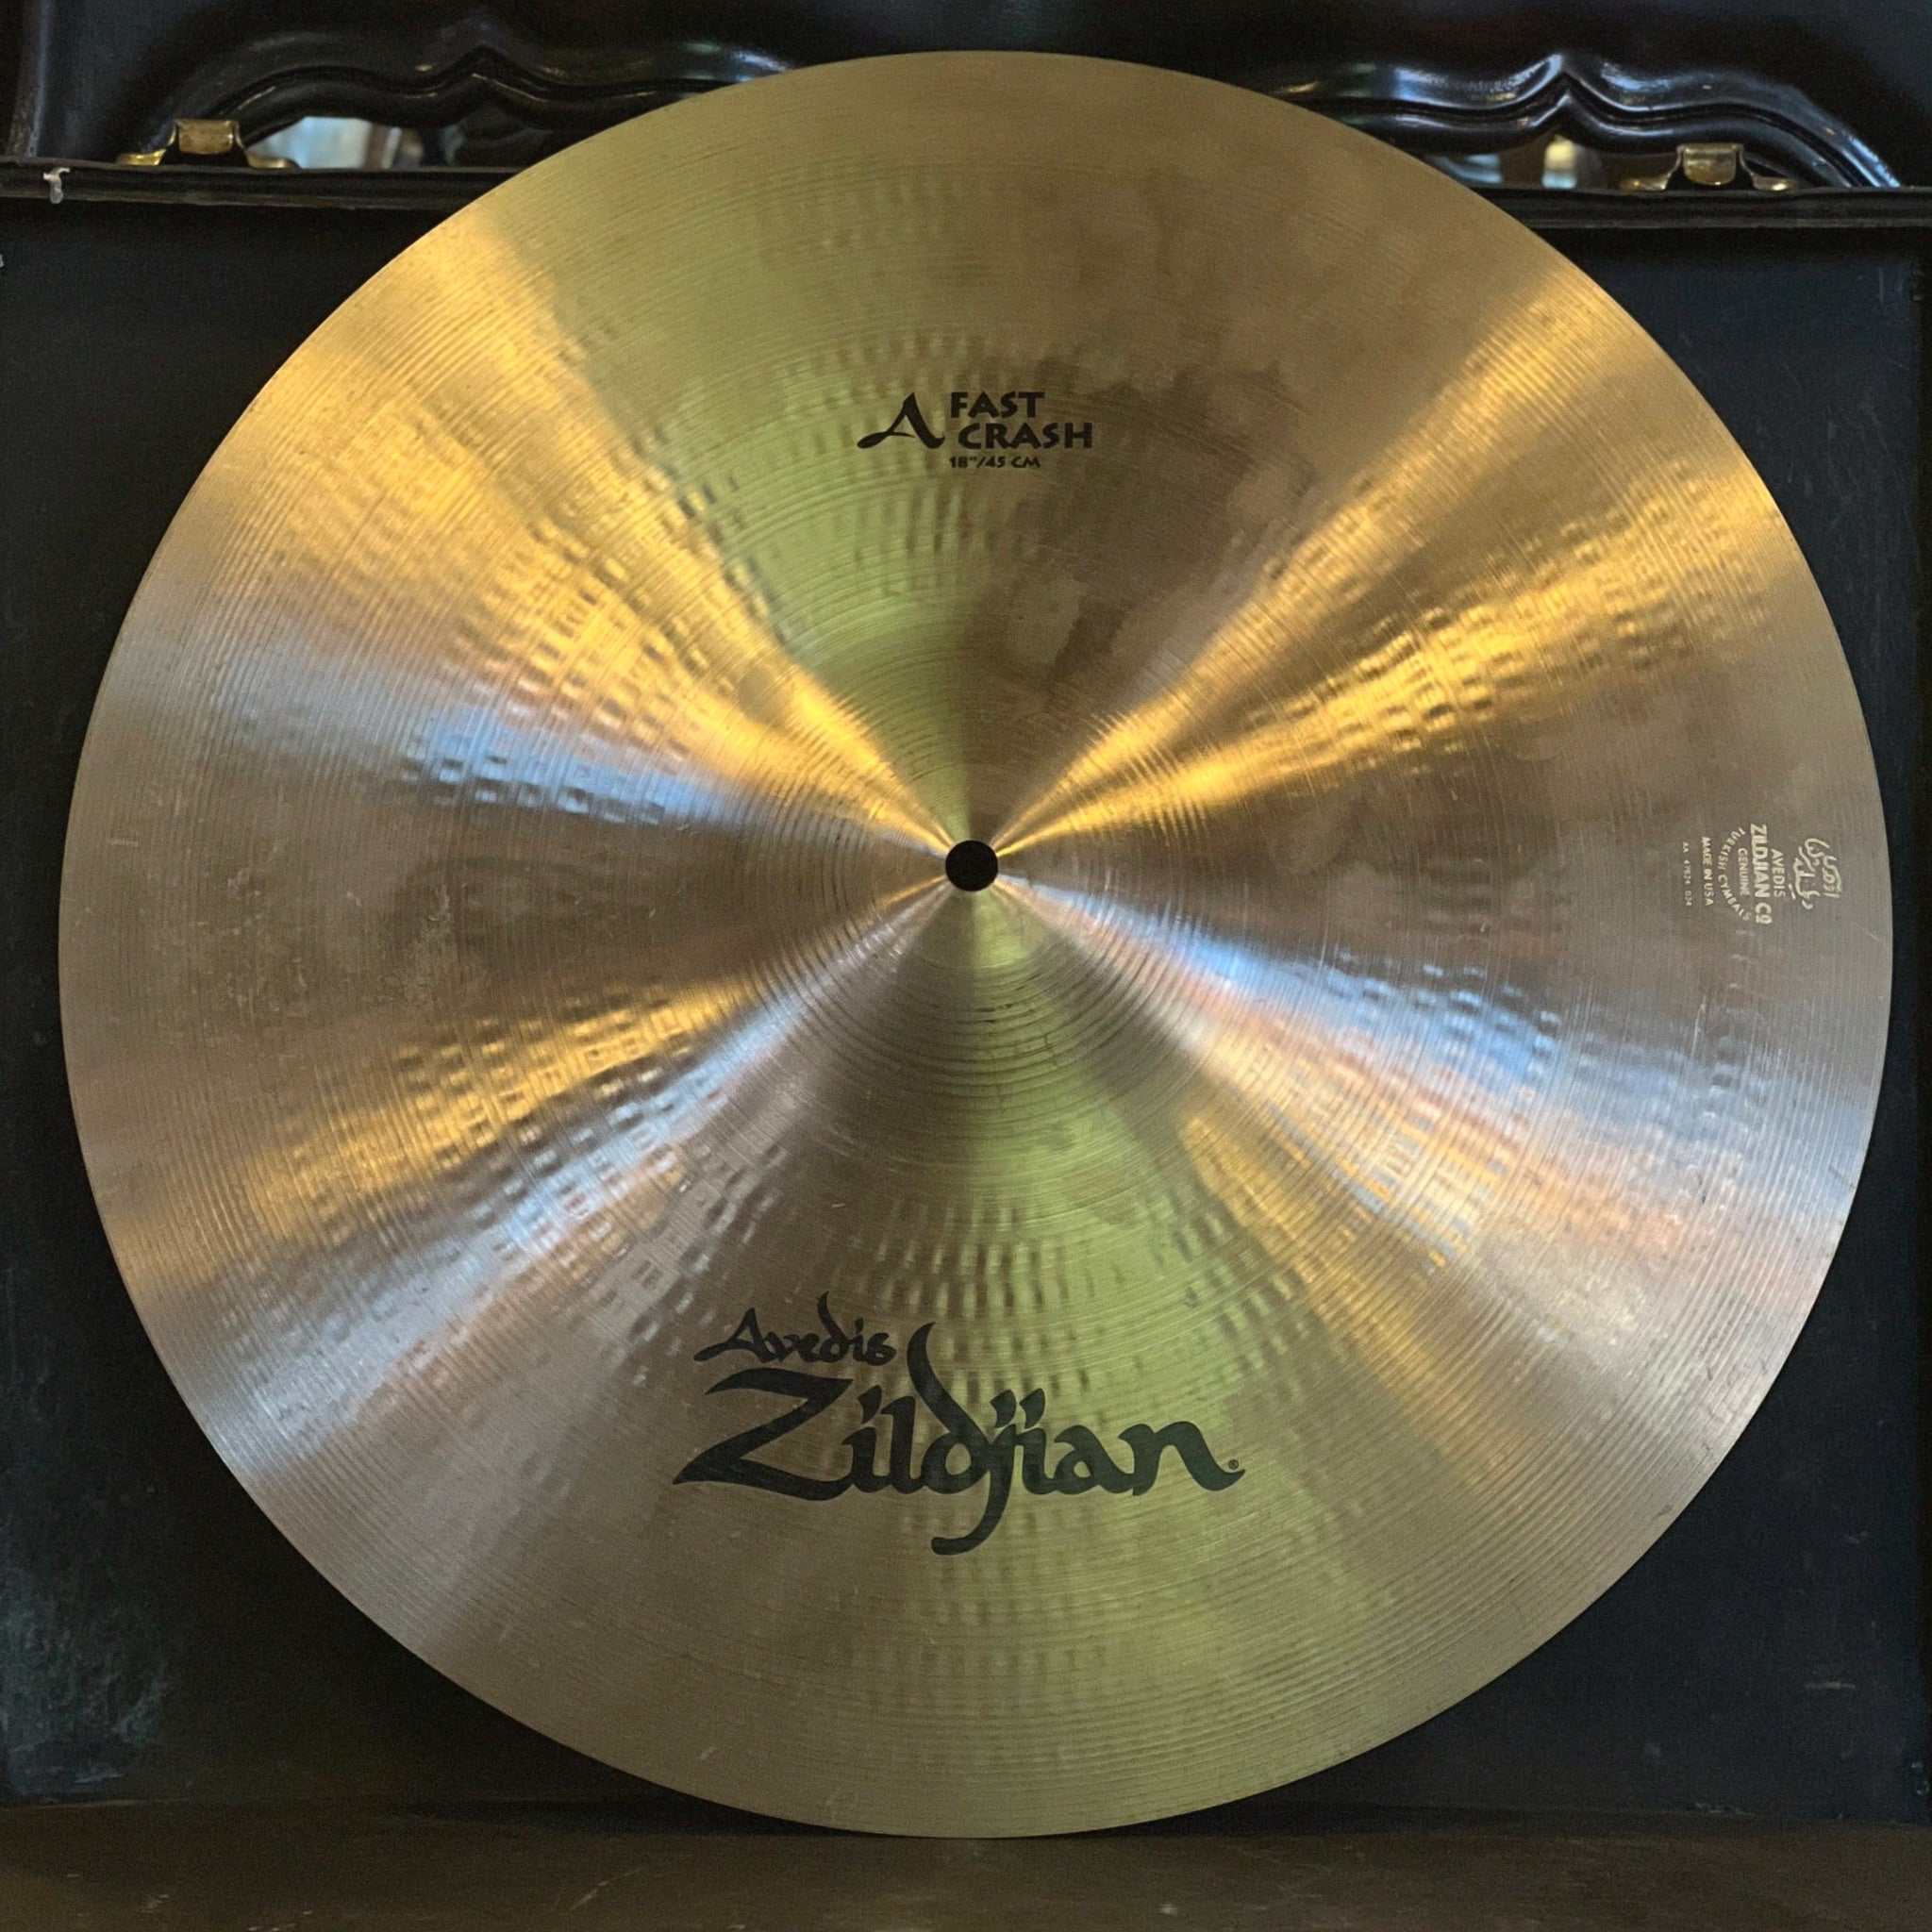 USED Zildjian 18" A. Zildjian Fast Crash Cymbal - 1218g